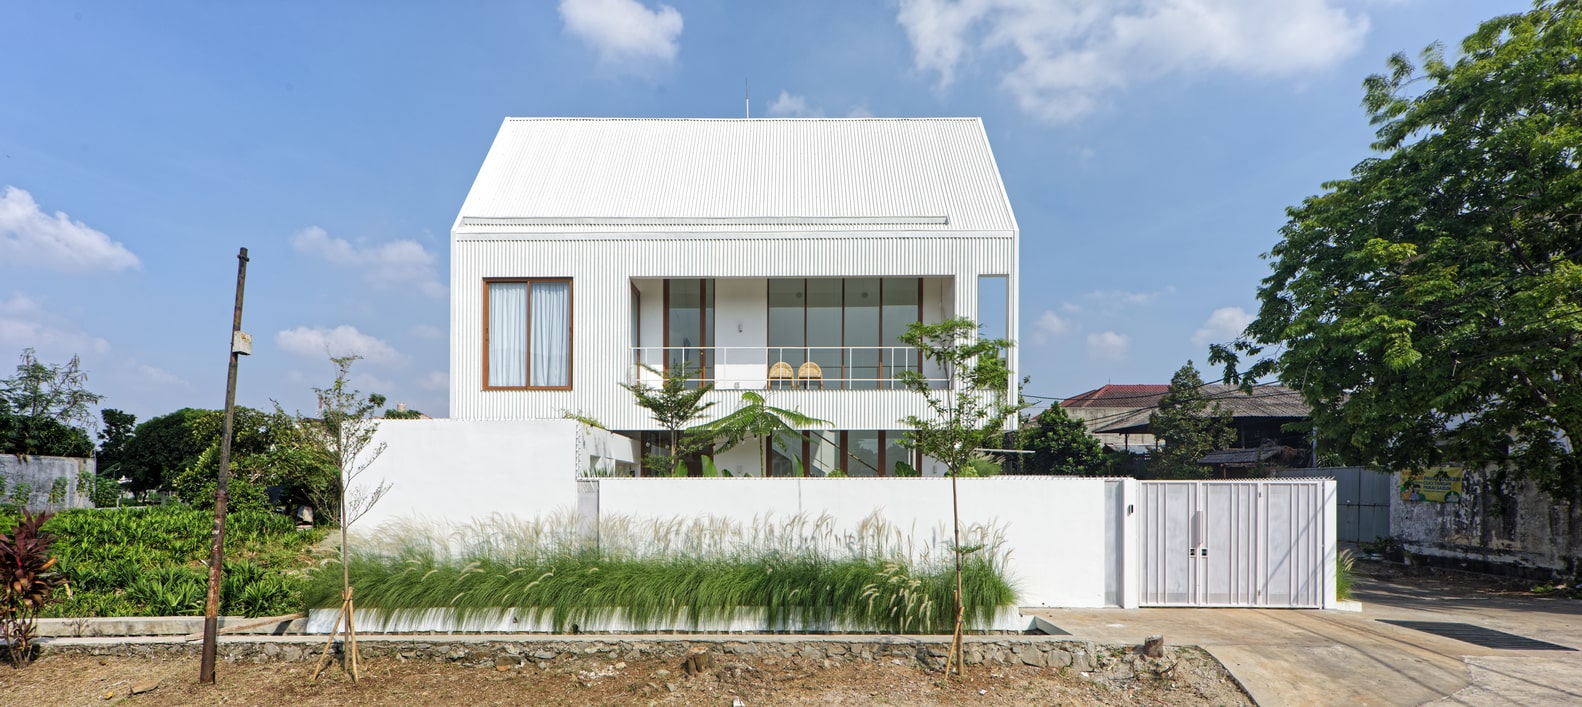 Nagato House by RASA Architektura